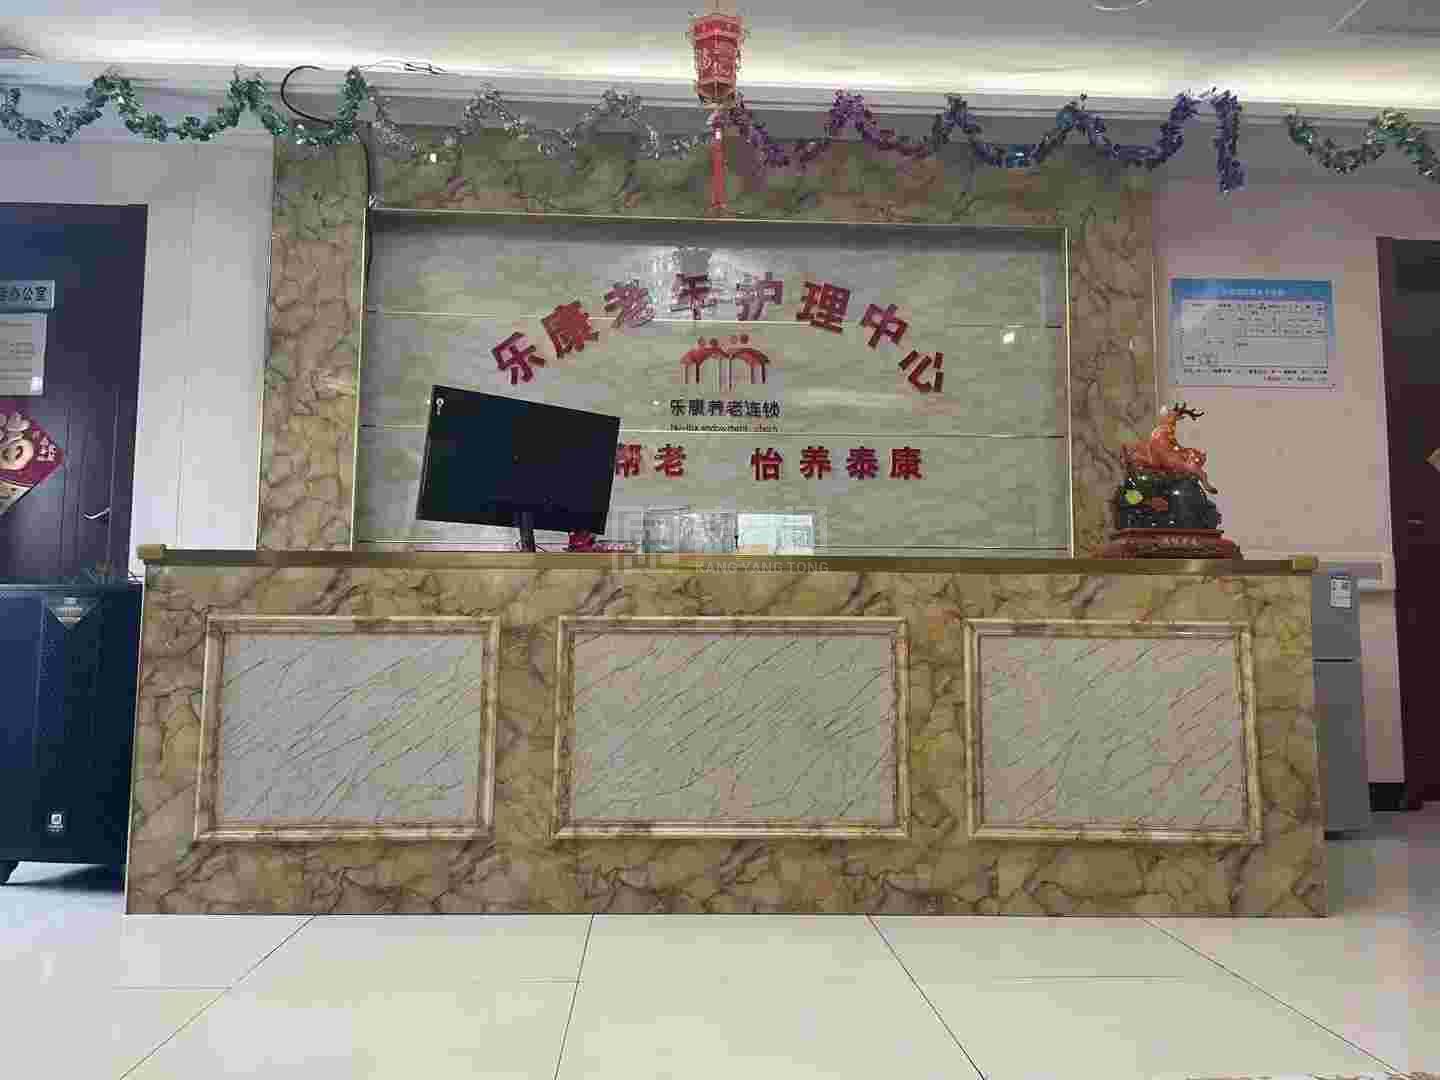 滁州市琅琊区乐康老年护理中心服务项目图3惬意的环境、感受岁月静好